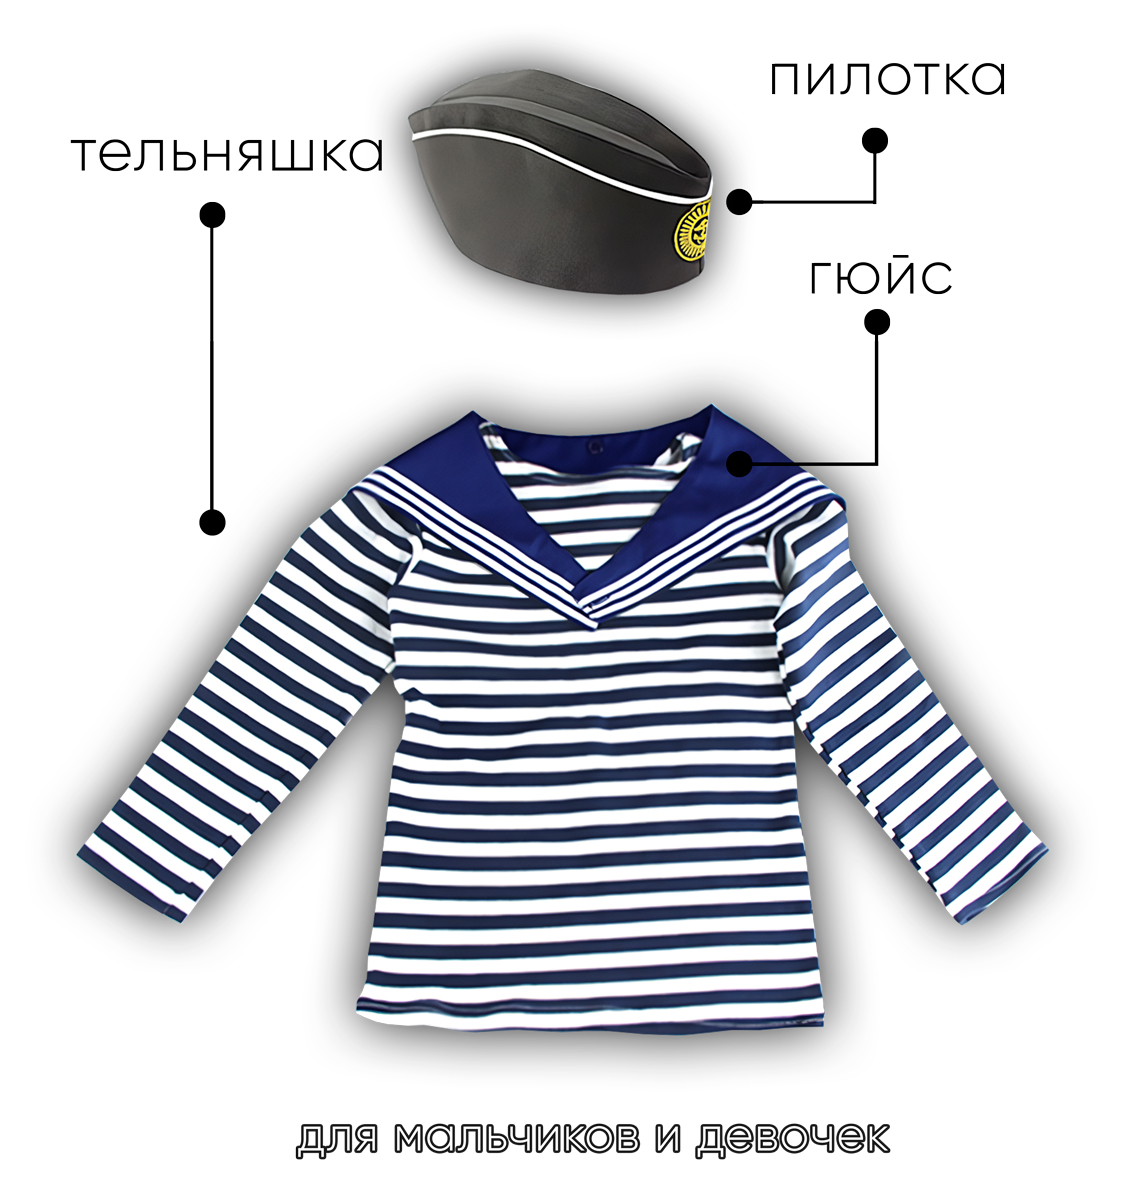 Детский набор матроса для утренника (тельняшка: 32 размер, пилотка детская: 56 размер (на рост 128-134, до 9 лет) и гюйс детский синий)